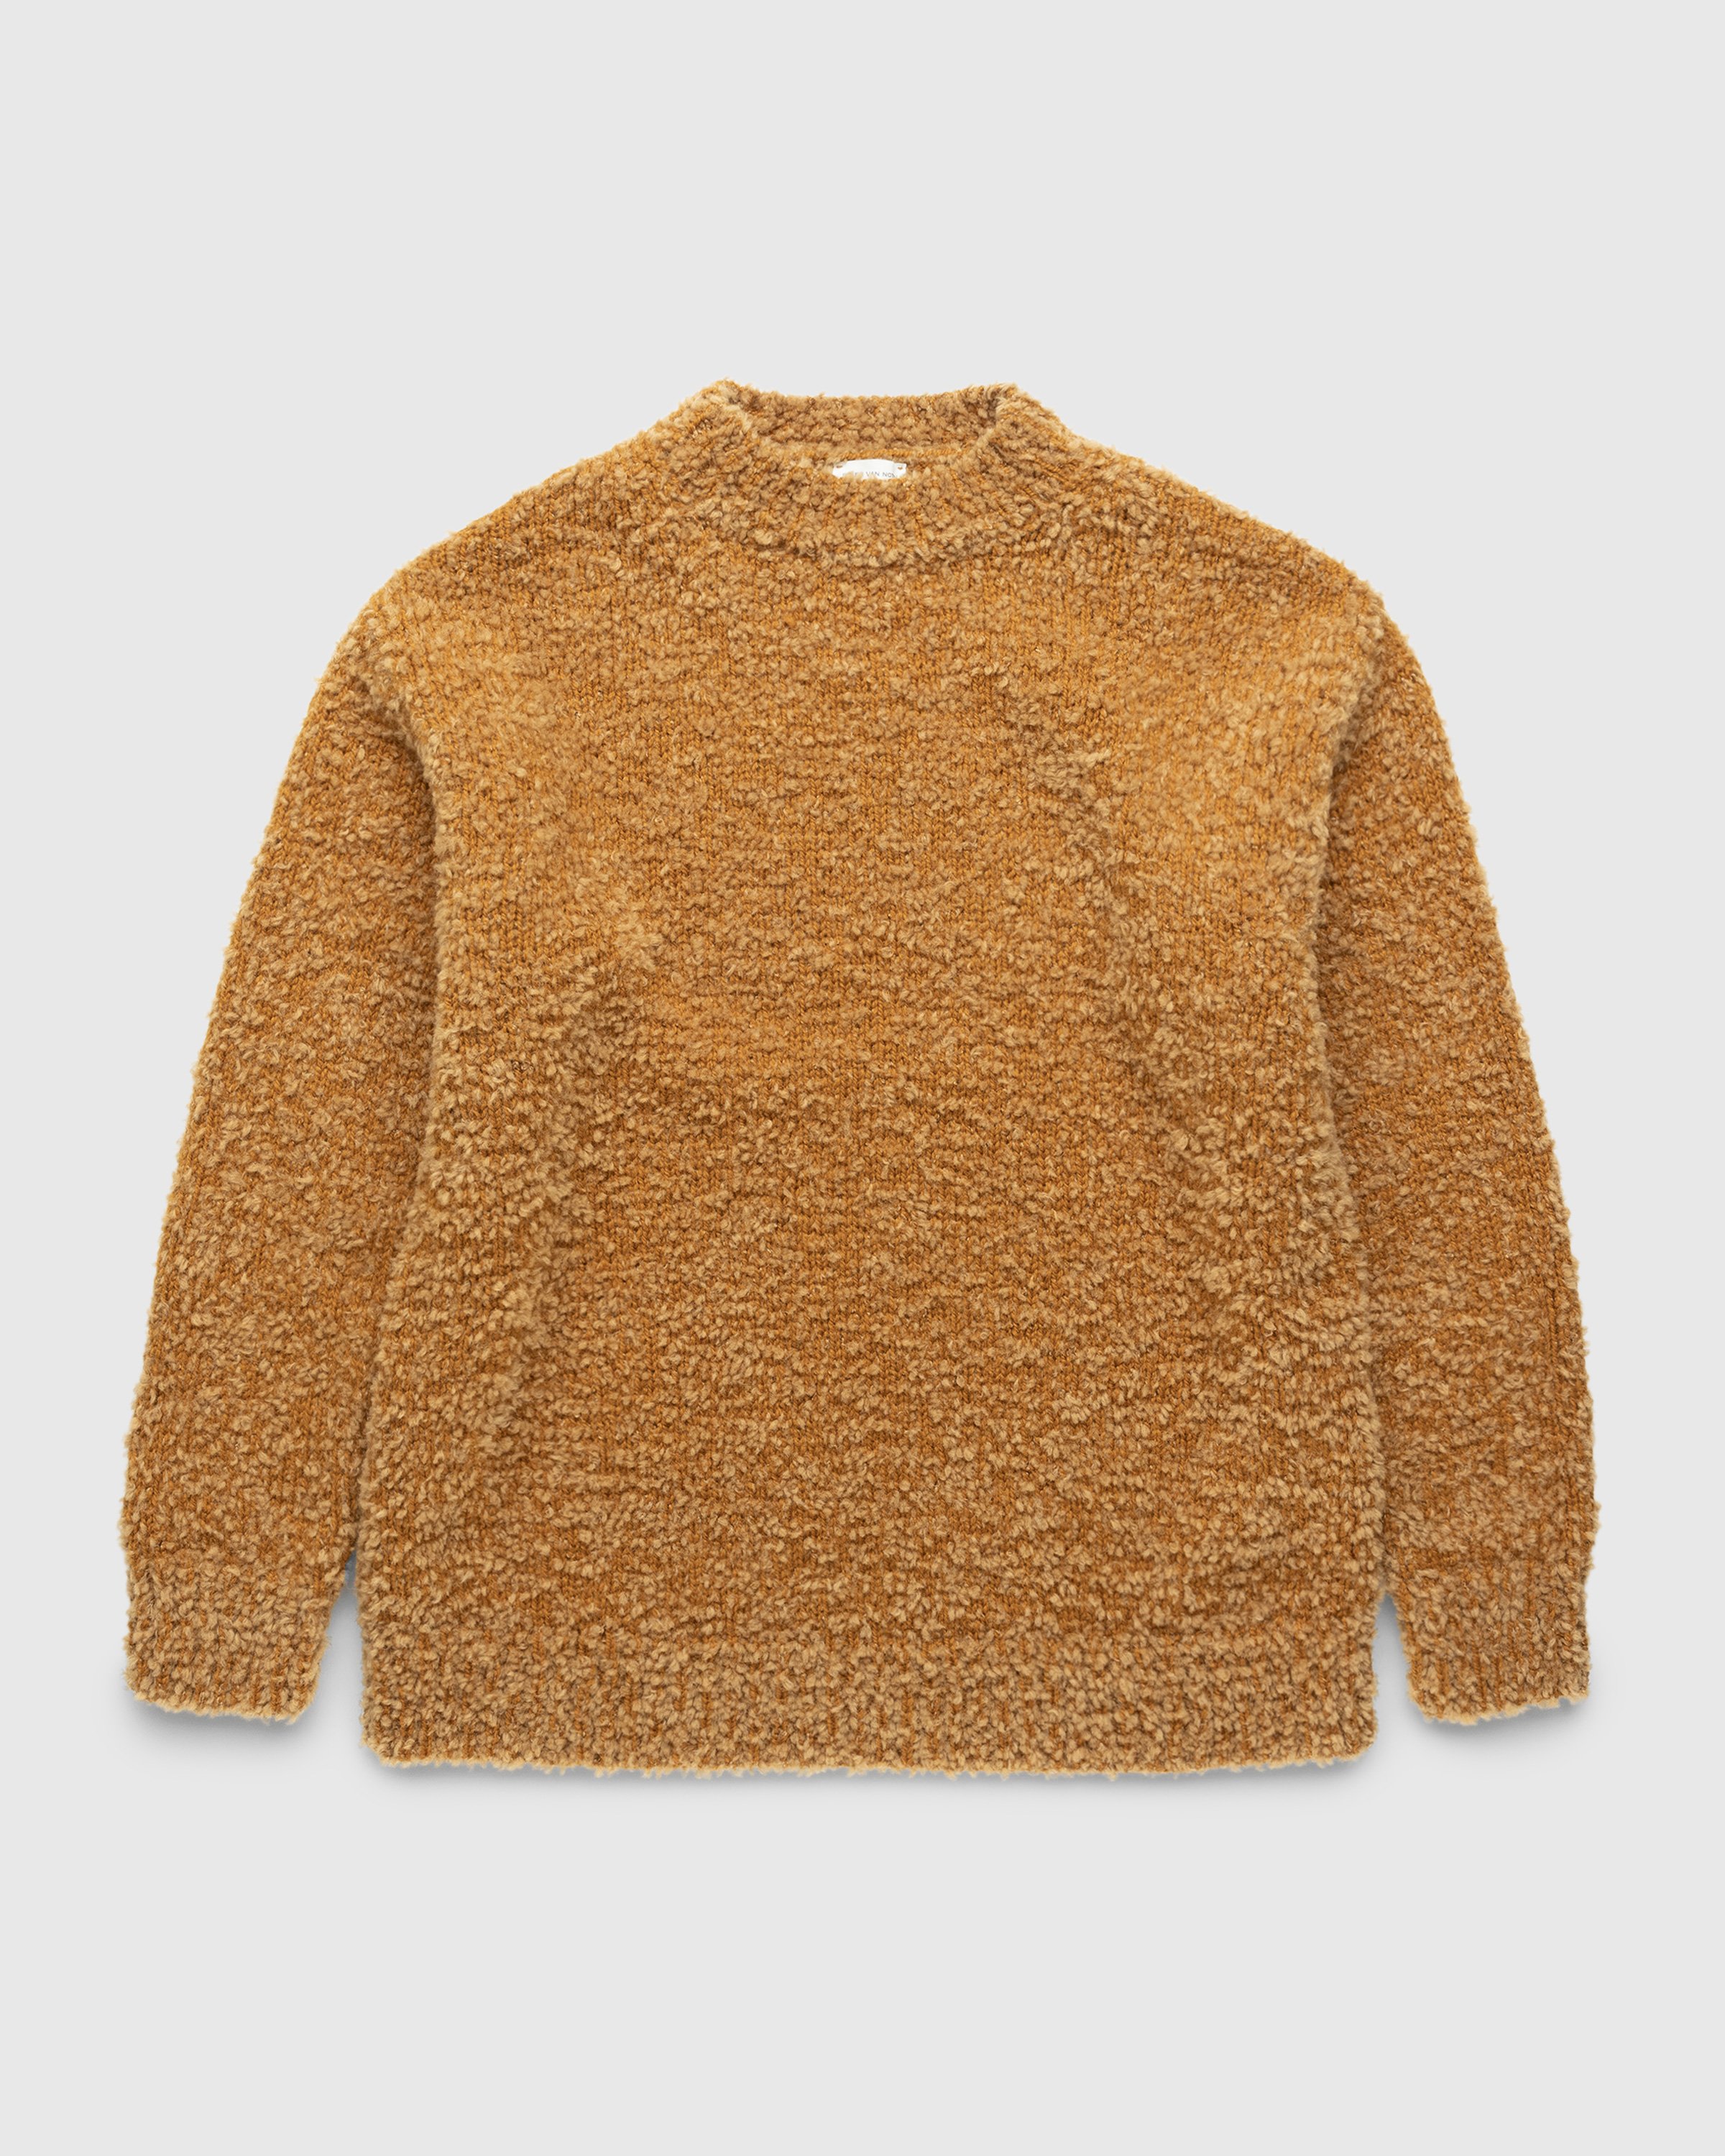 Dries van Noten - Merice Knit Camel - Clothing - Brown - Image 1